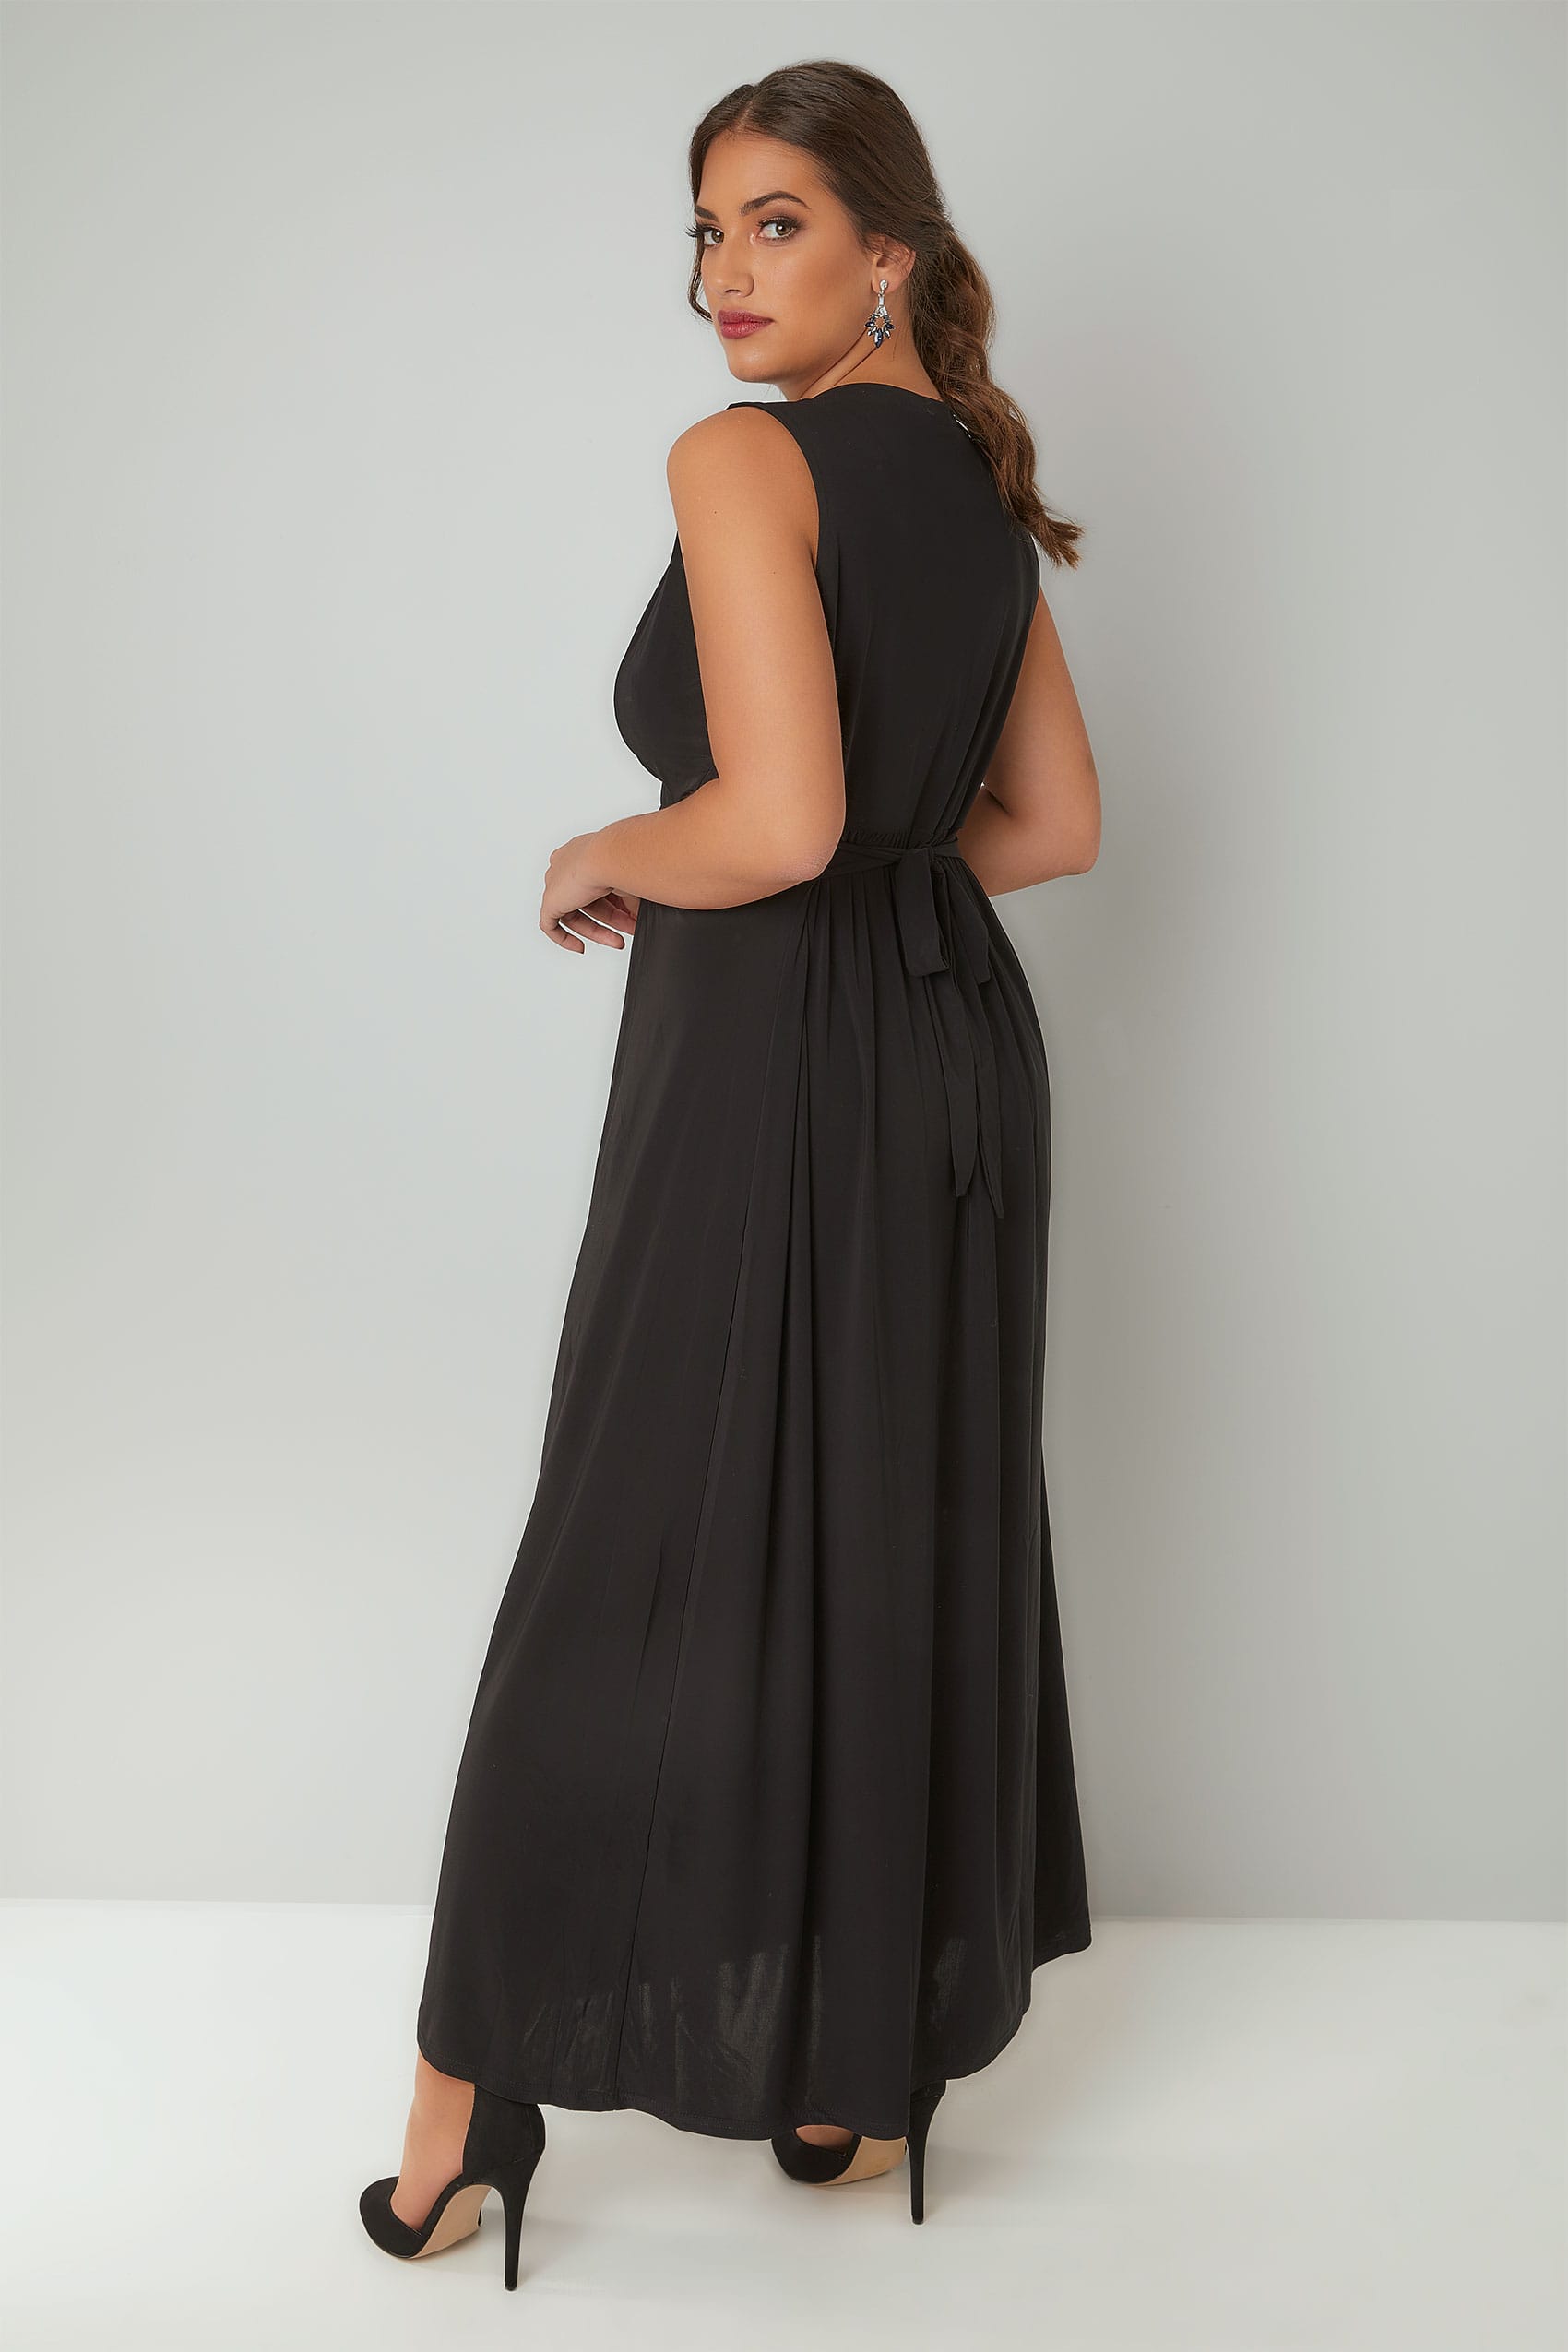 PRASLIN Black Slinky Wrap Front Maxi Dress, Plus size 16 to 26